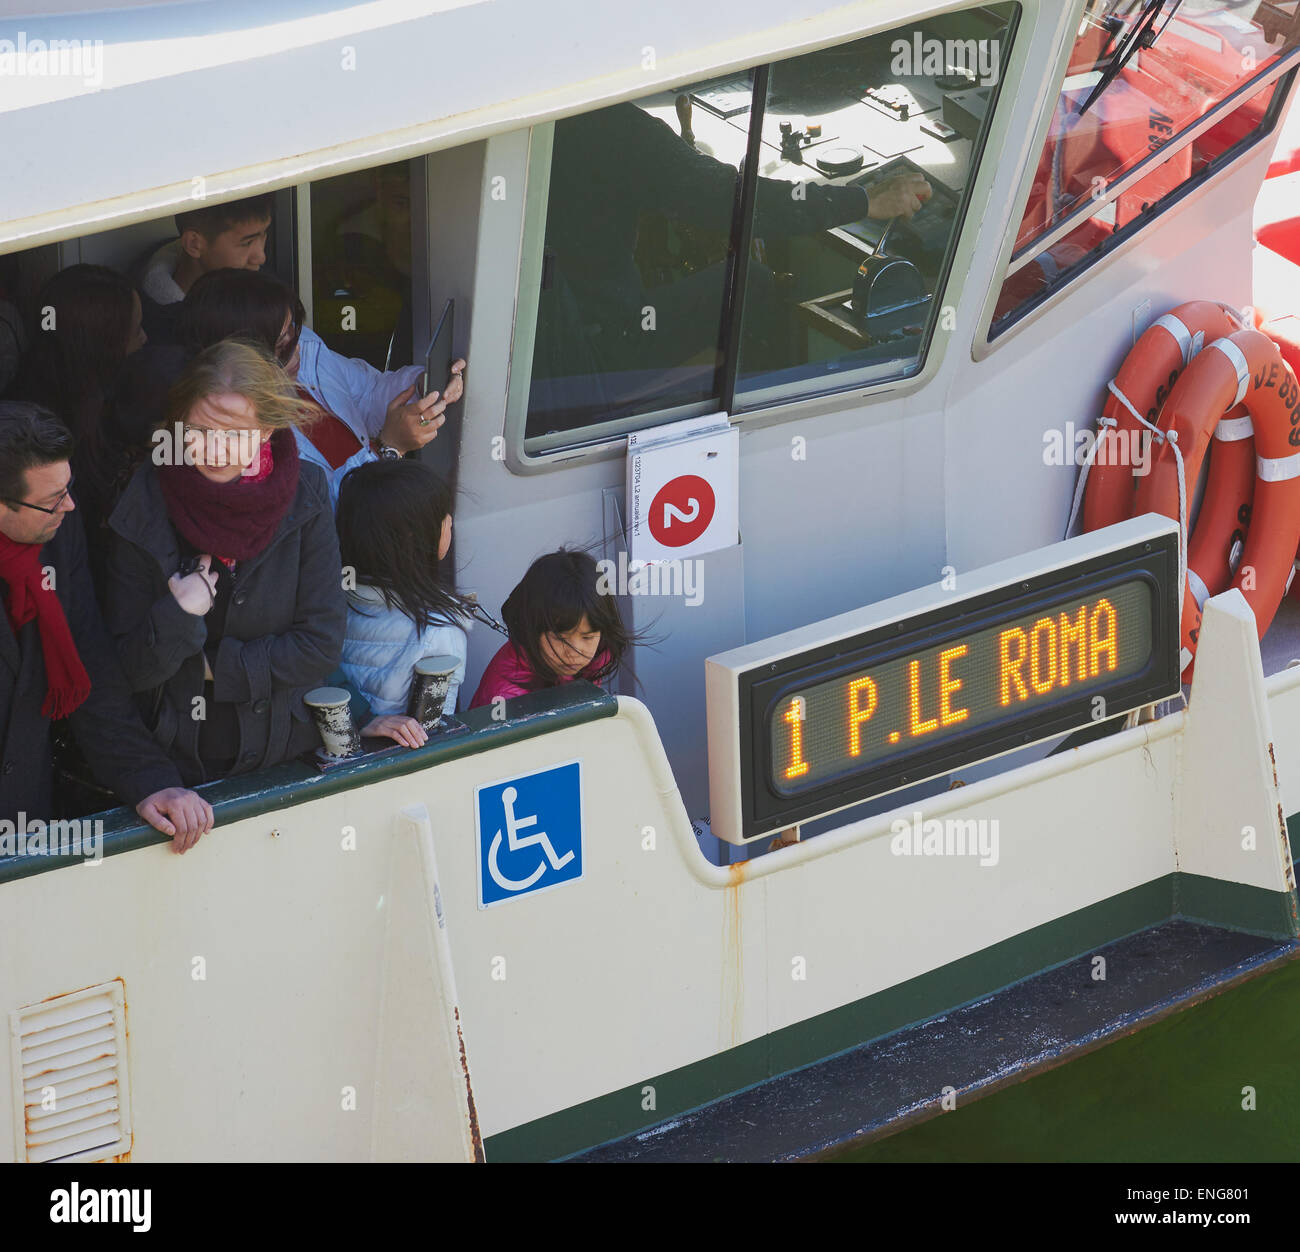 No 1 vaporetto boat on way to Piazzale Roma Venice Veneto Italy Europe Stock Photo